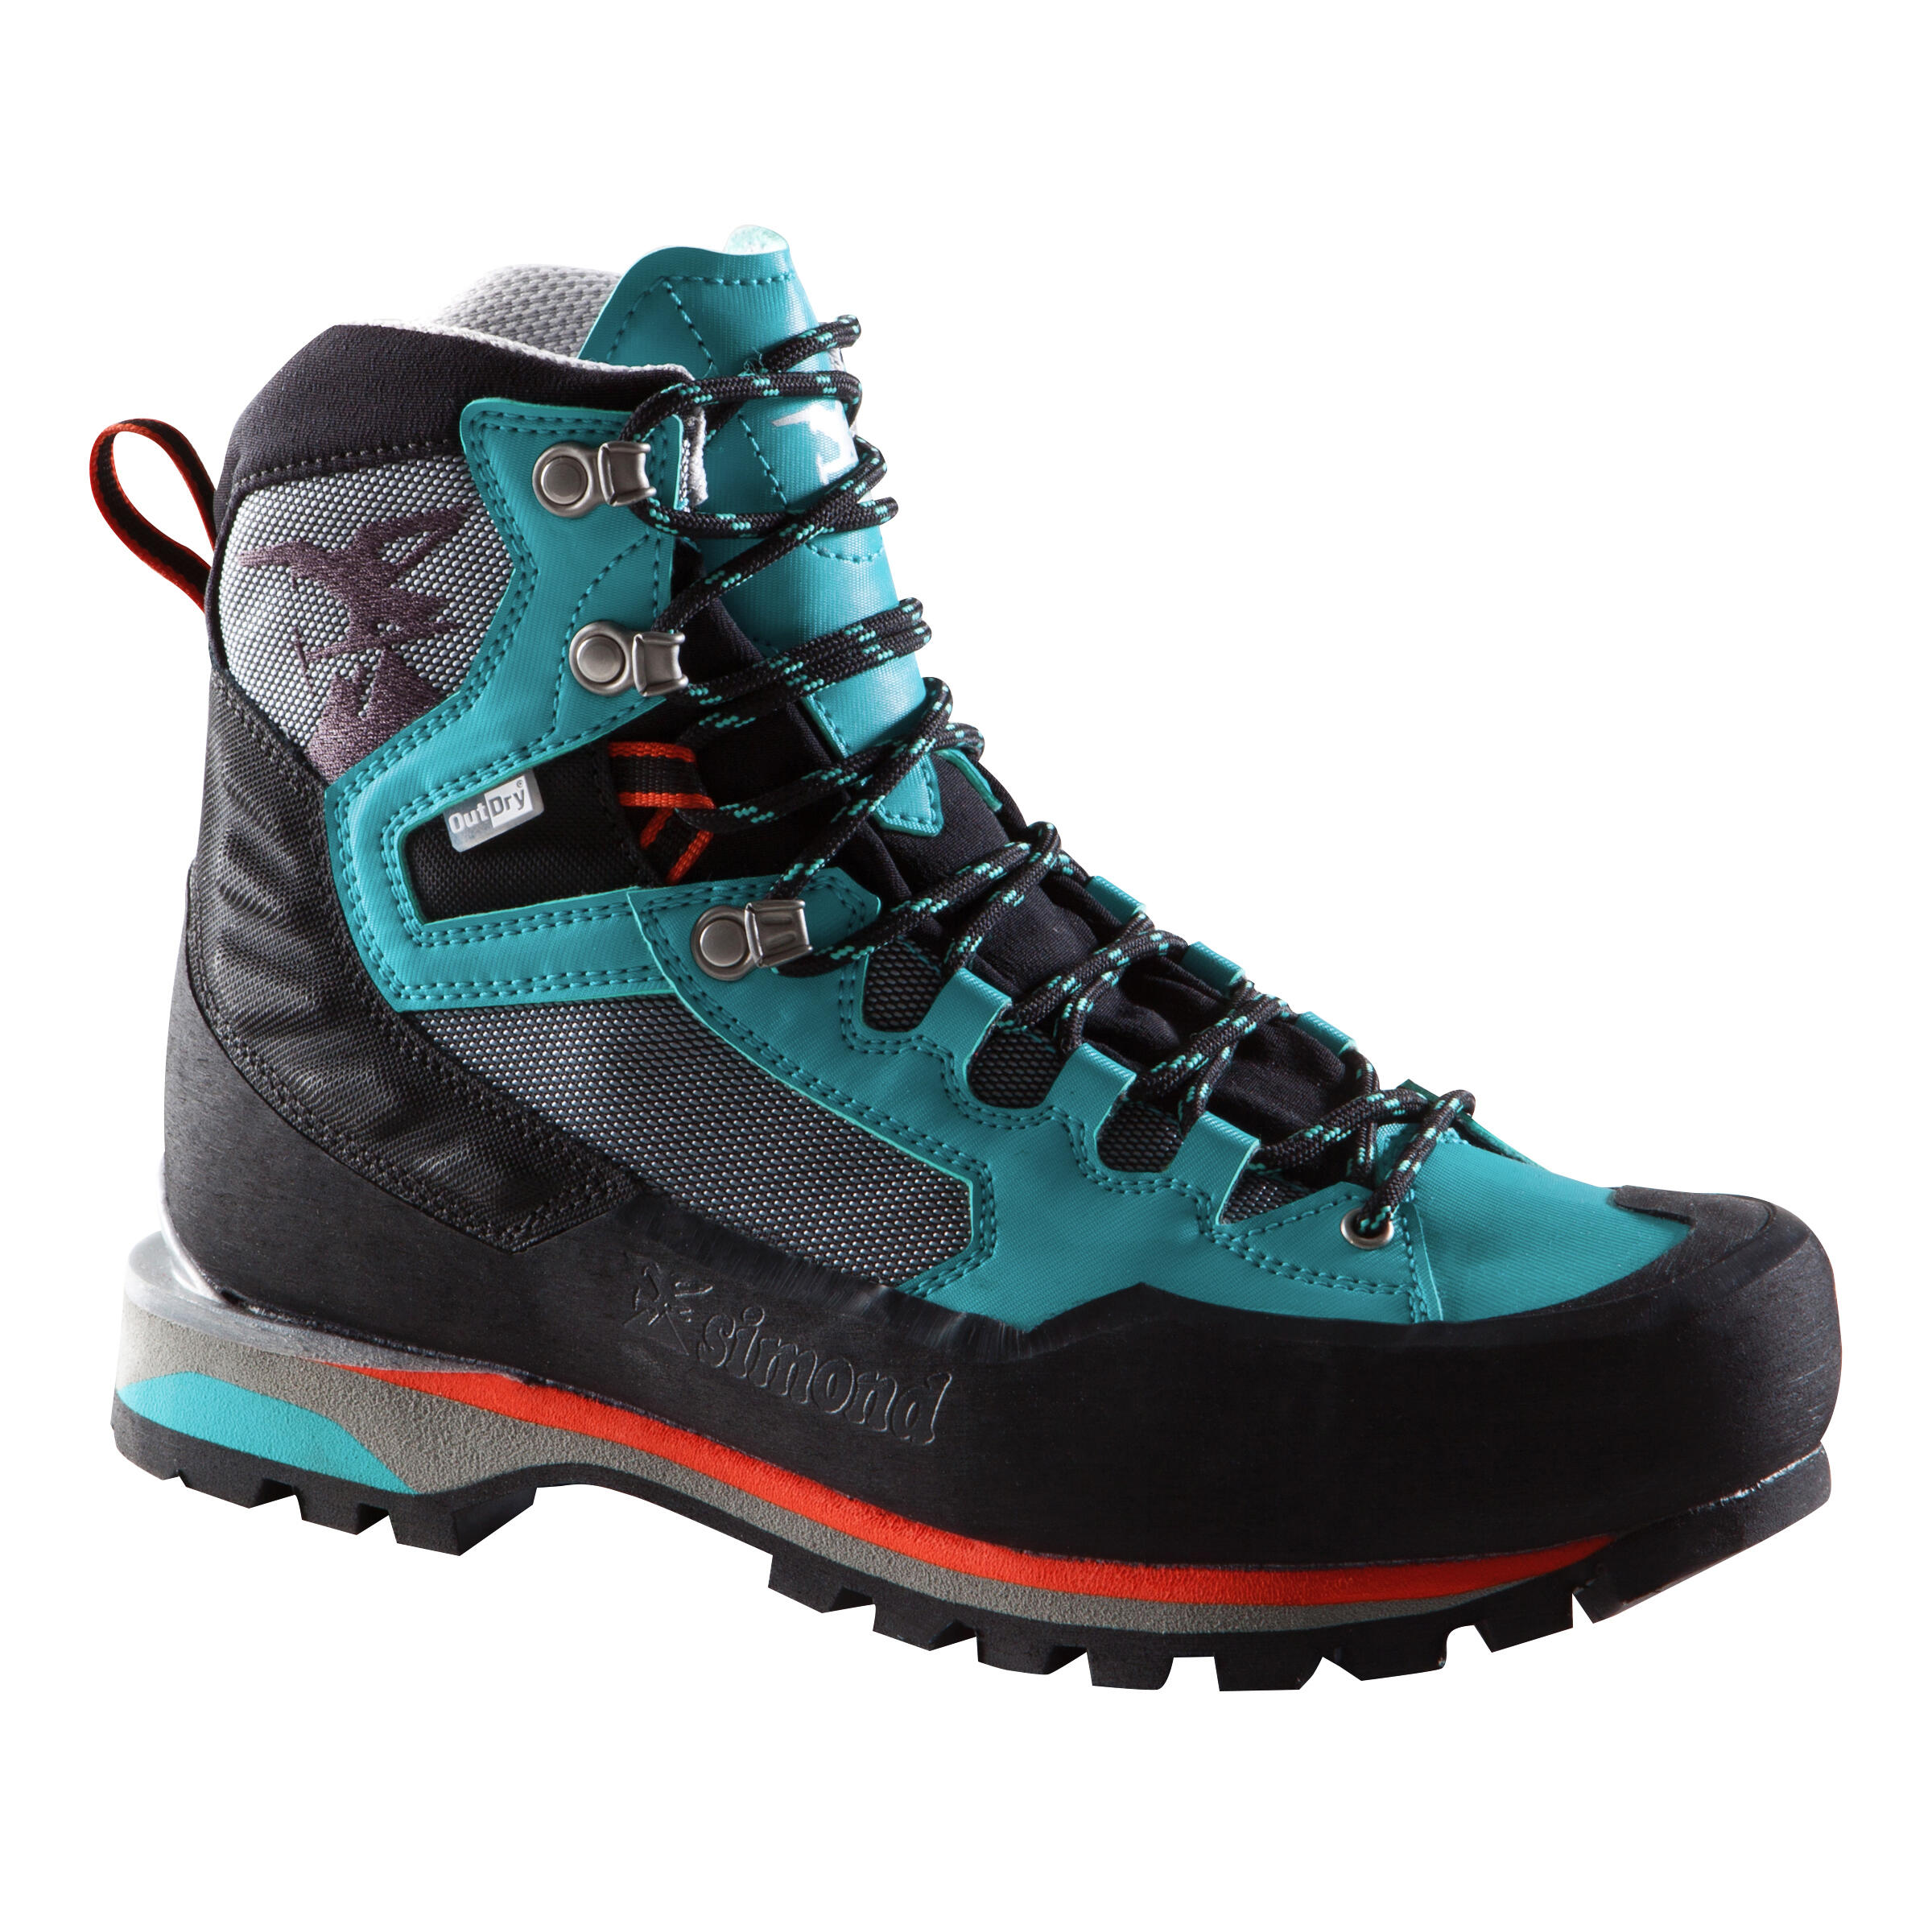 3 season mountaineering boots